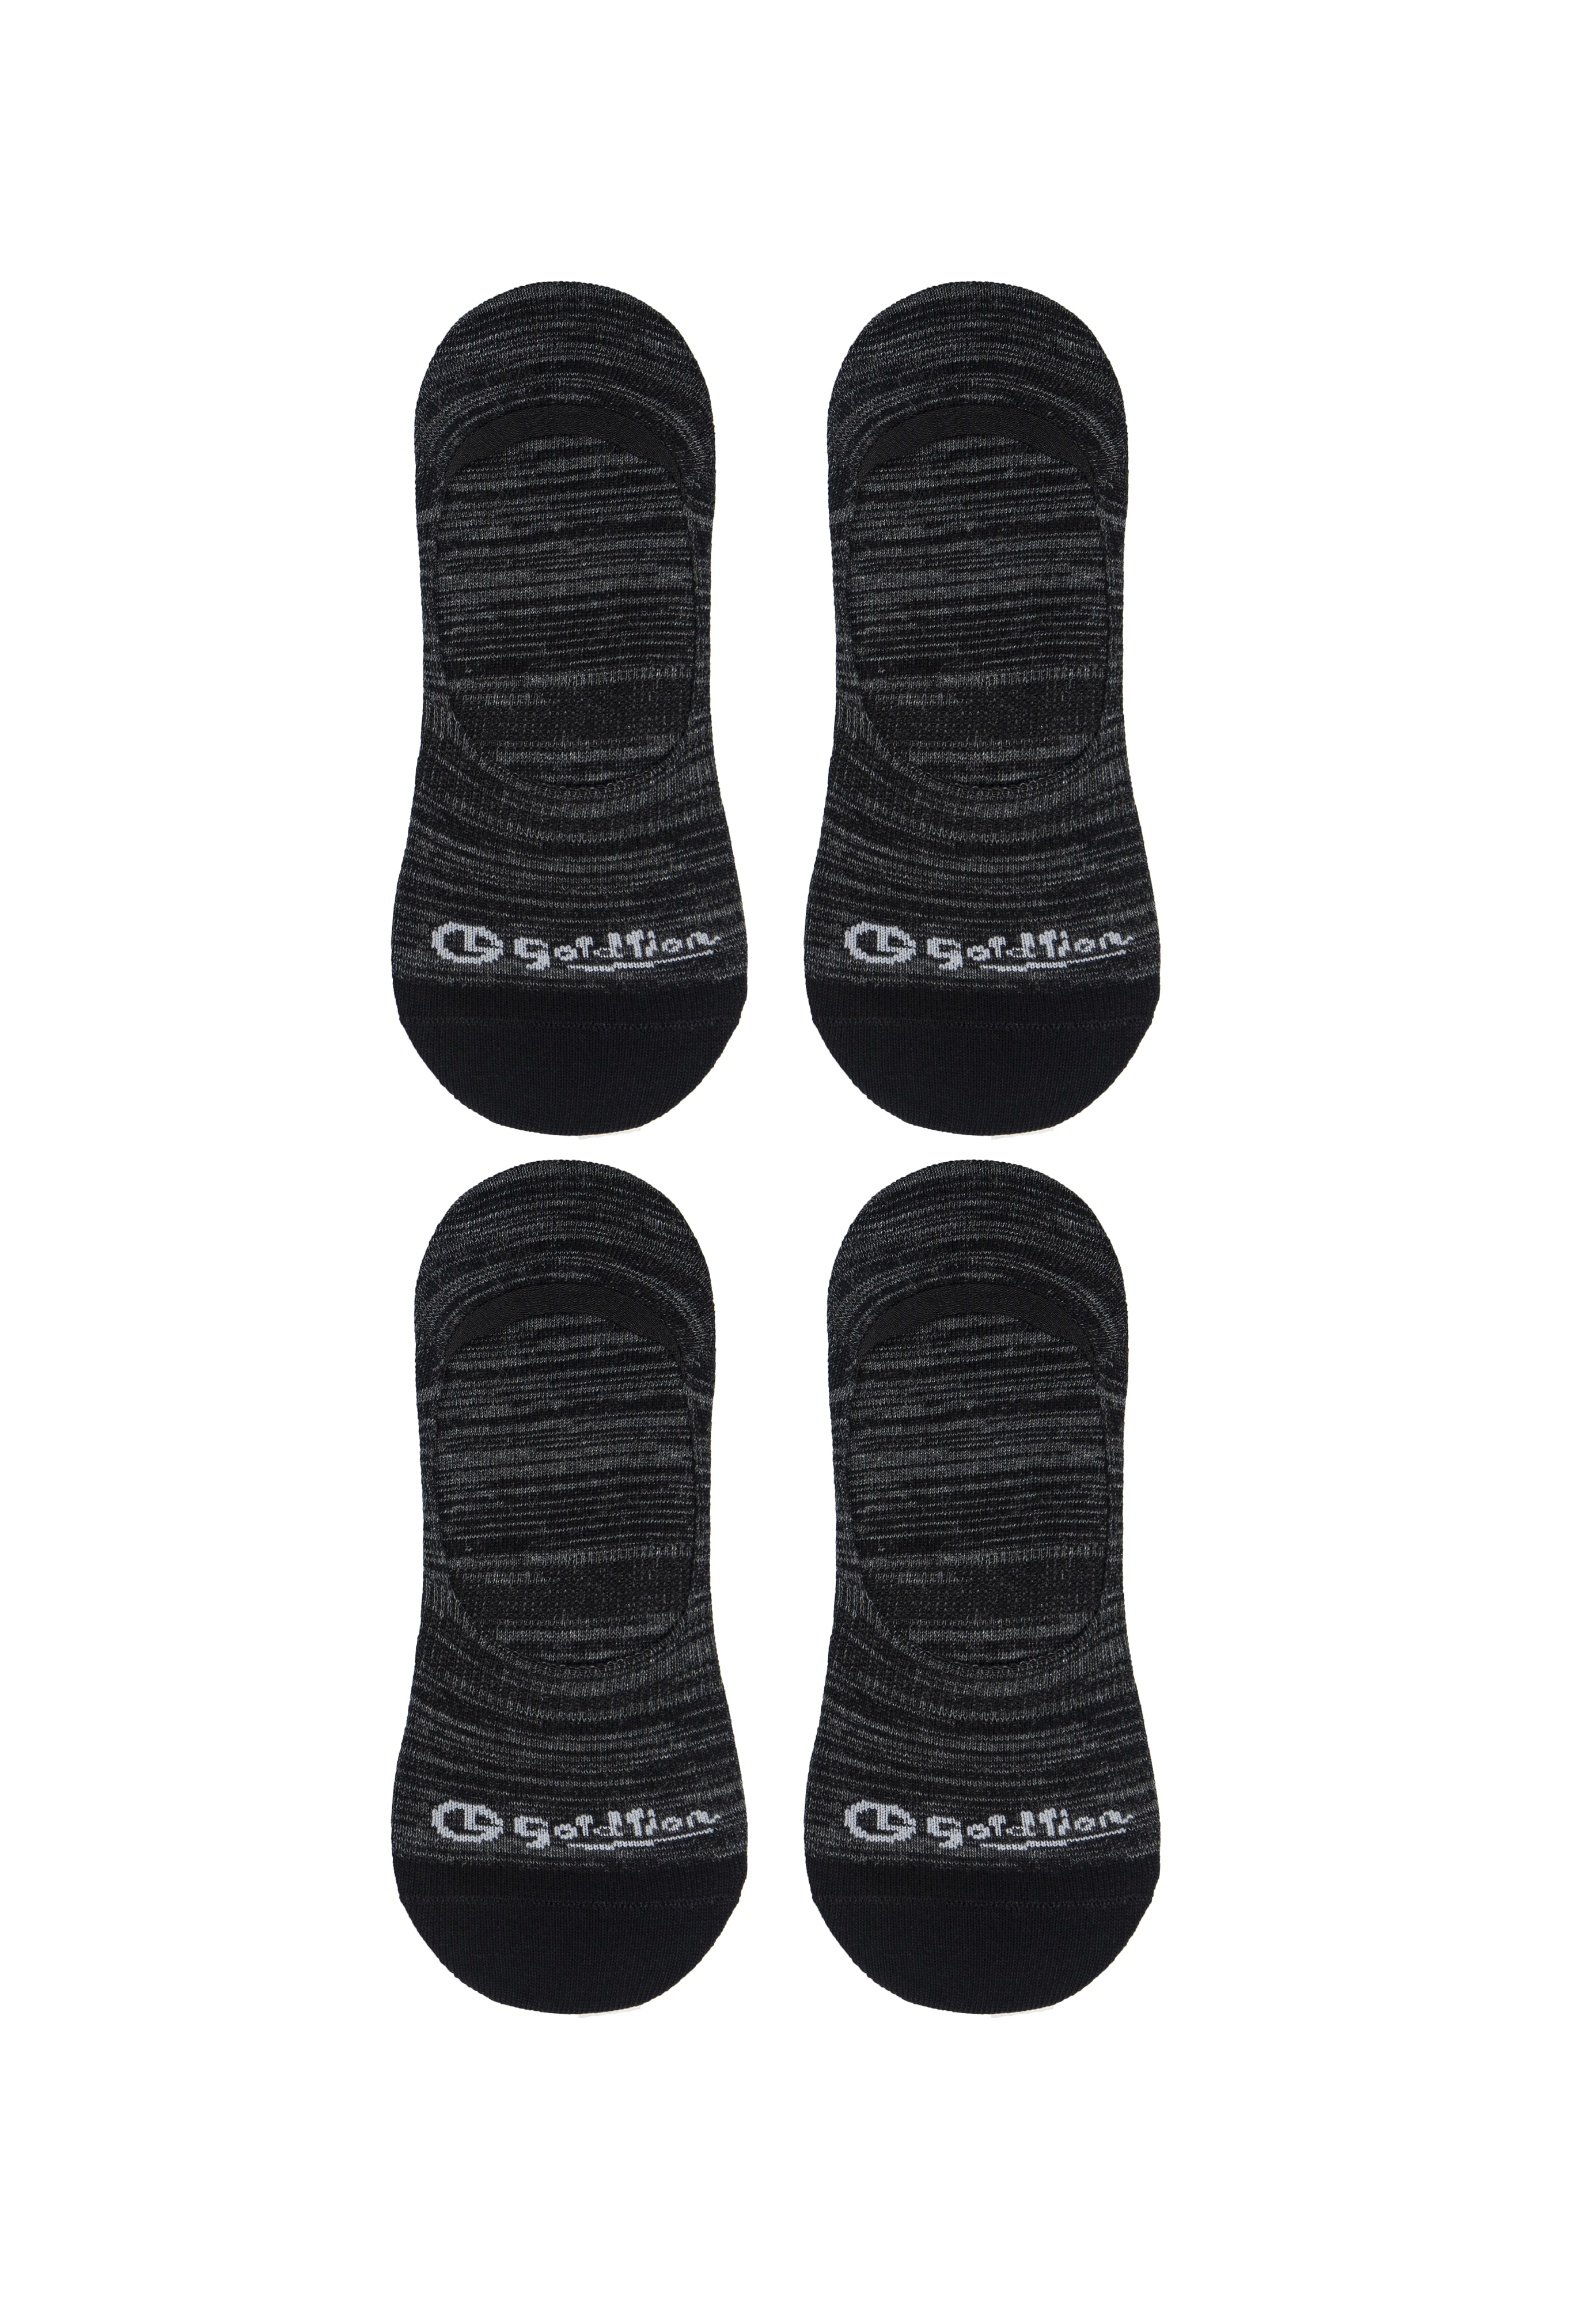 Goldlion Men Cotton Spandex Casual Socks (4-piece pack)